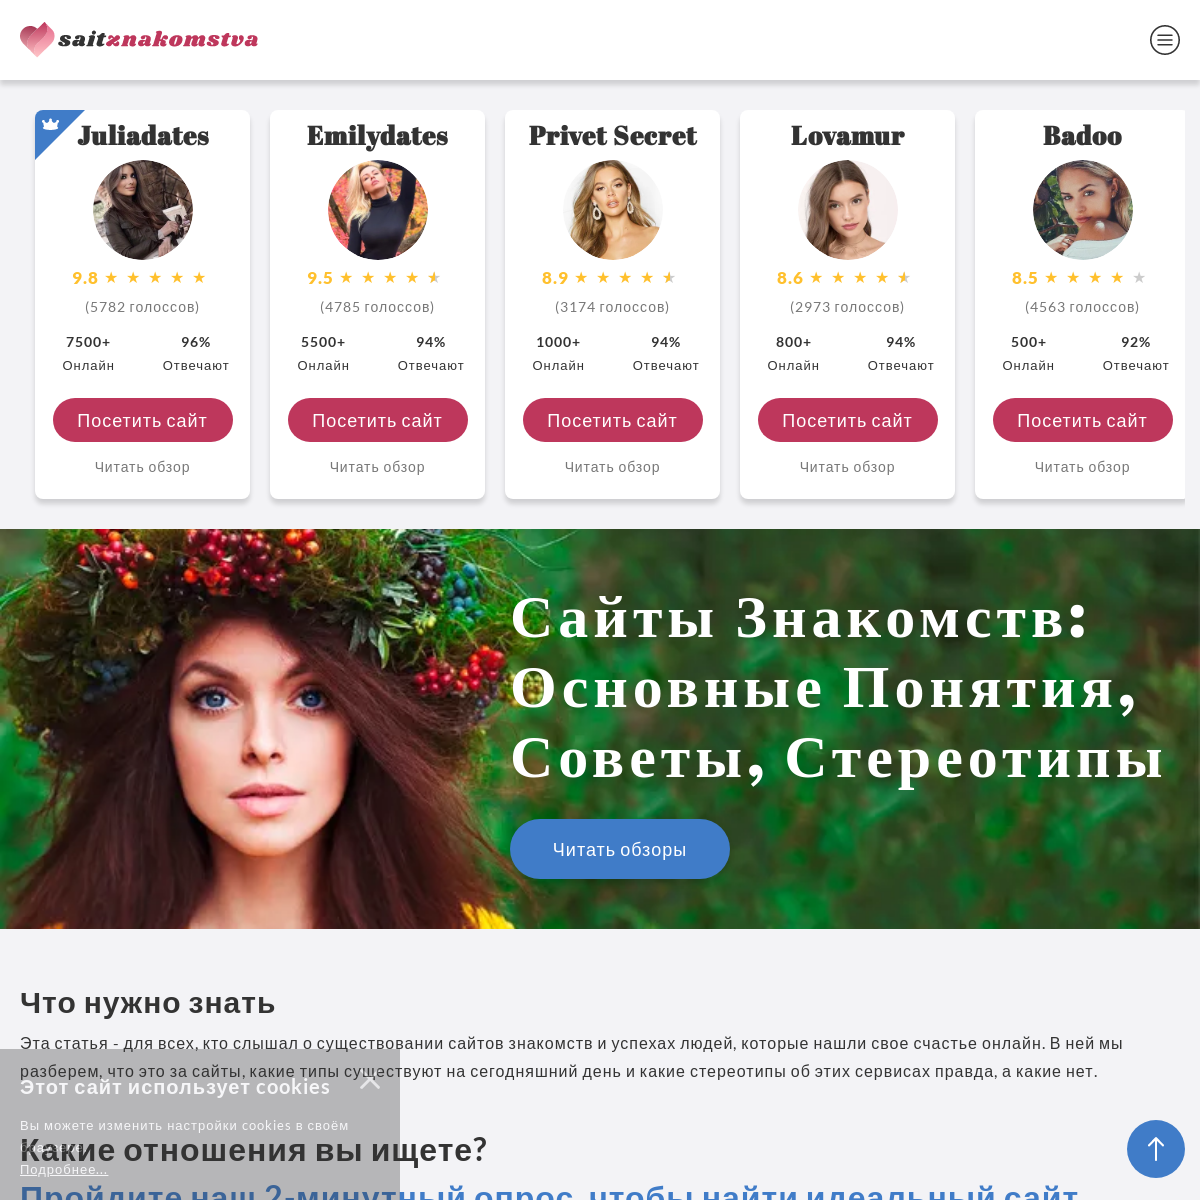 A complete backup of saitznakomstva.ru